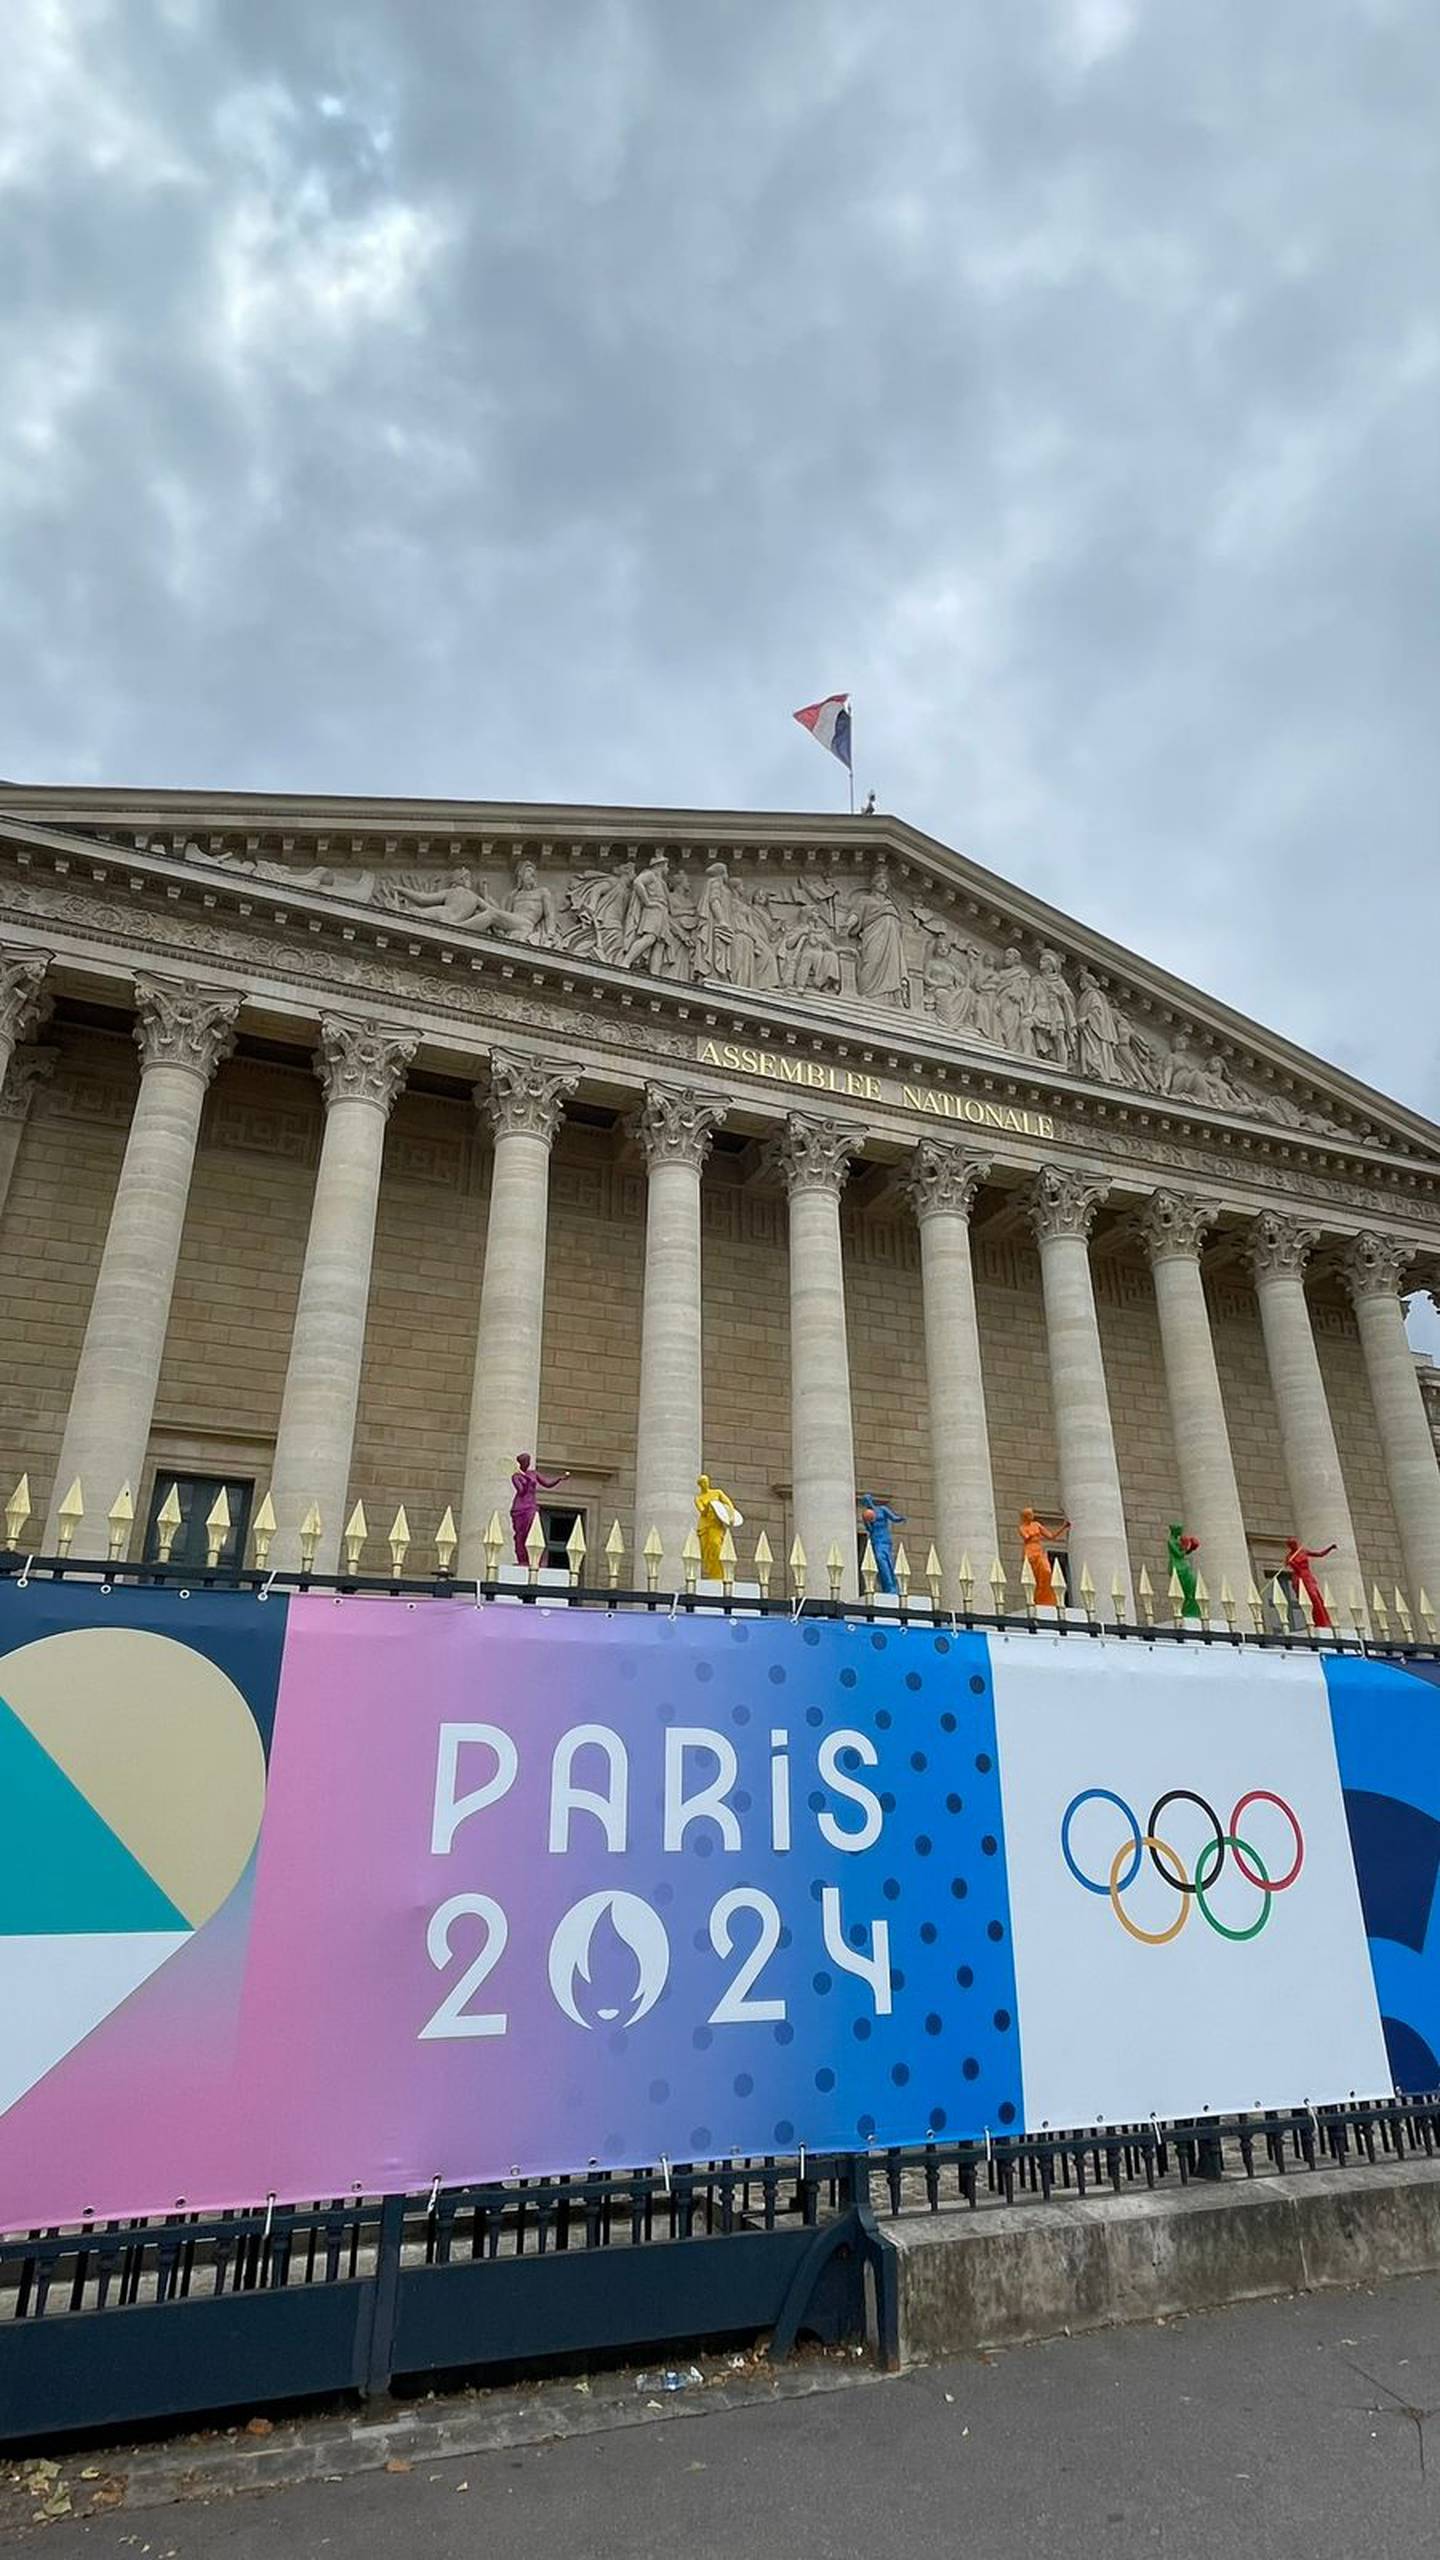 La Asamblea Nacional de París ya espera los juegos olímpicos.

Fotografía: Santiago Giraldo